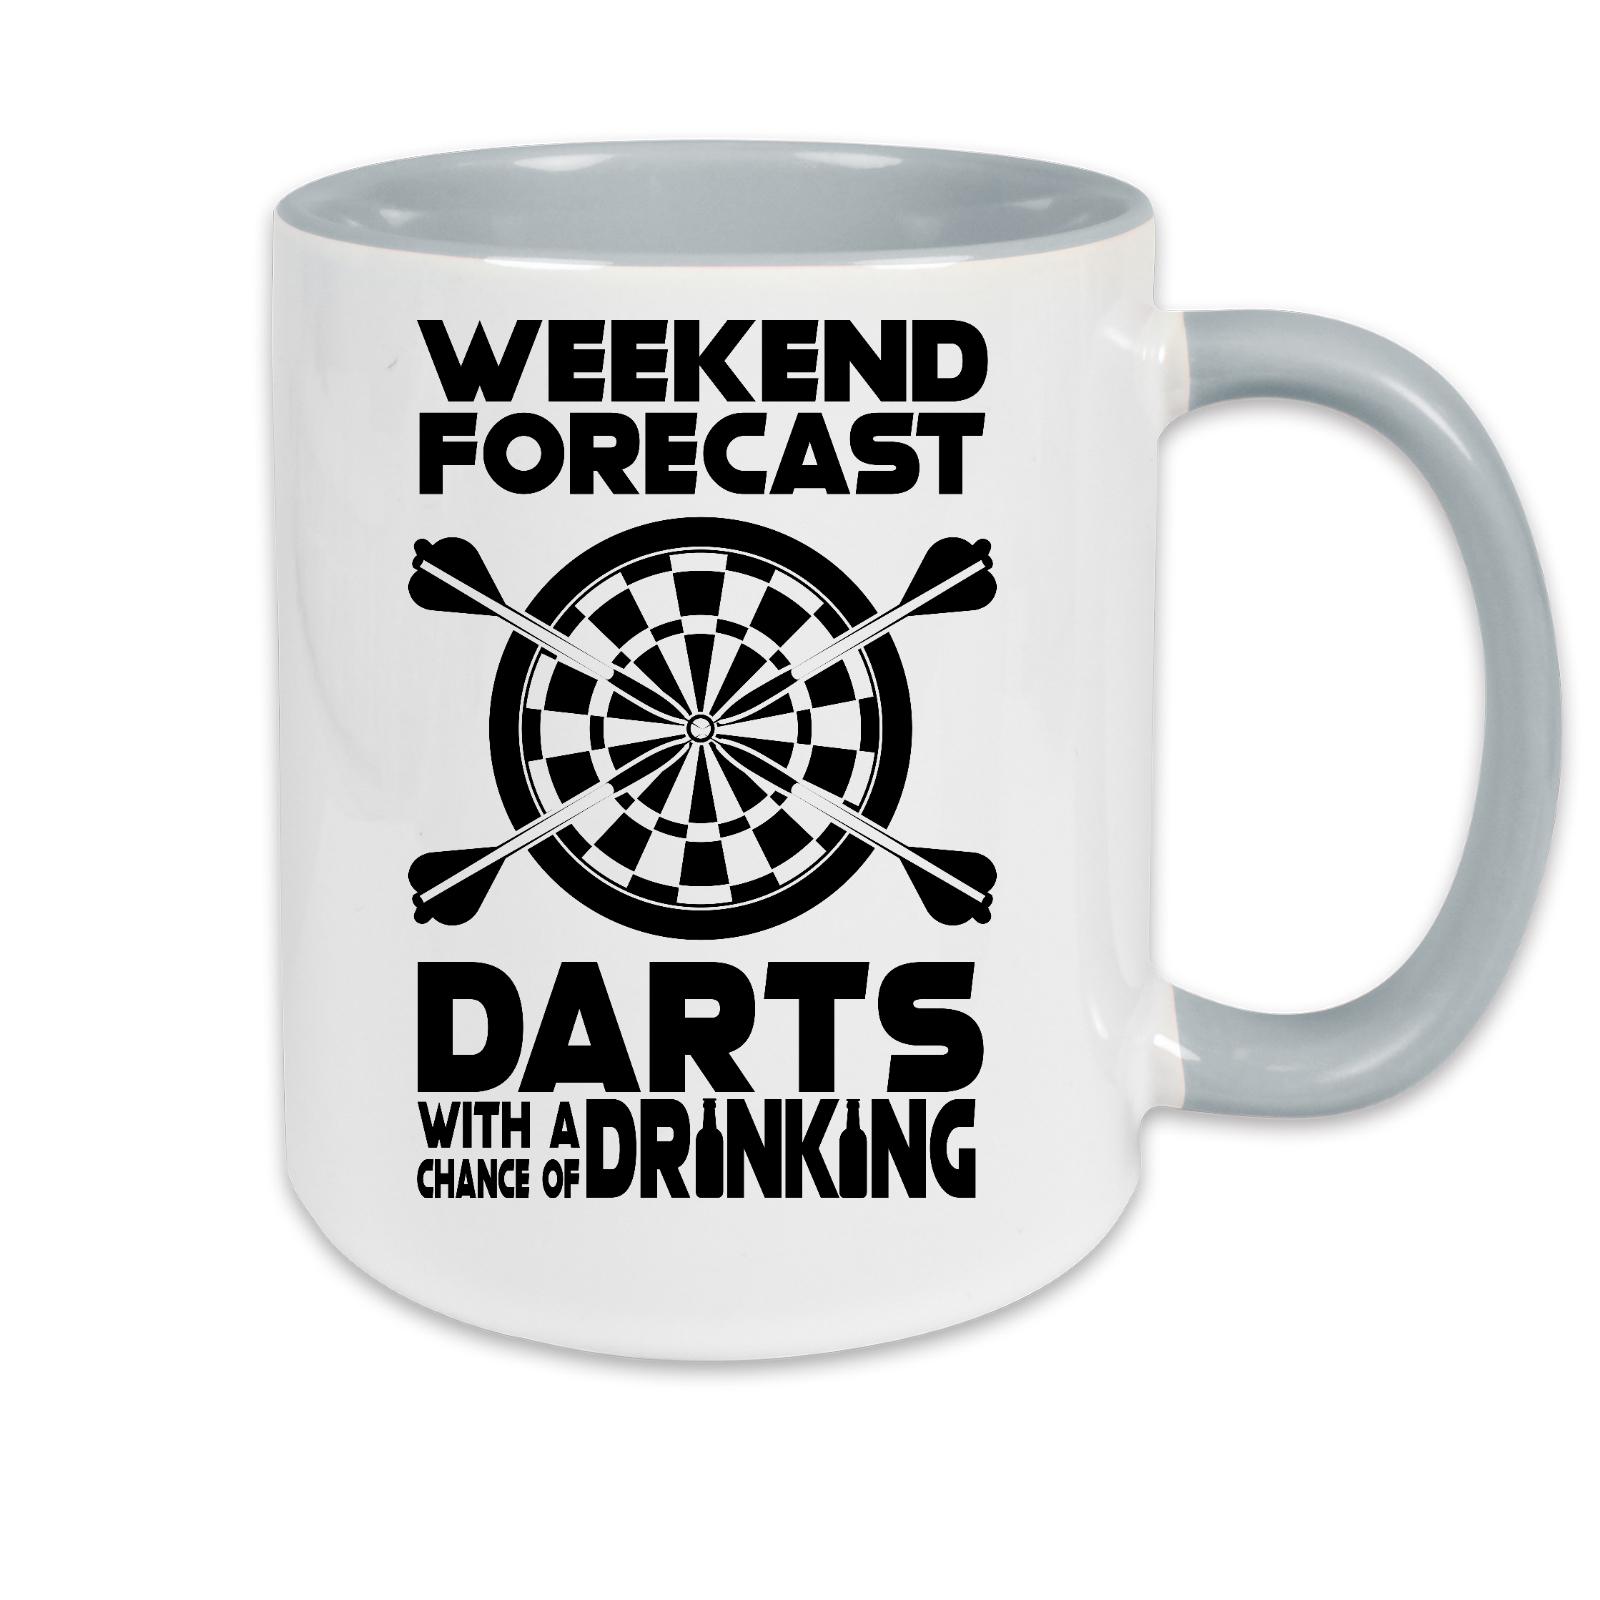 Tasse zweifarbig Darts Weekend Forecast Darts